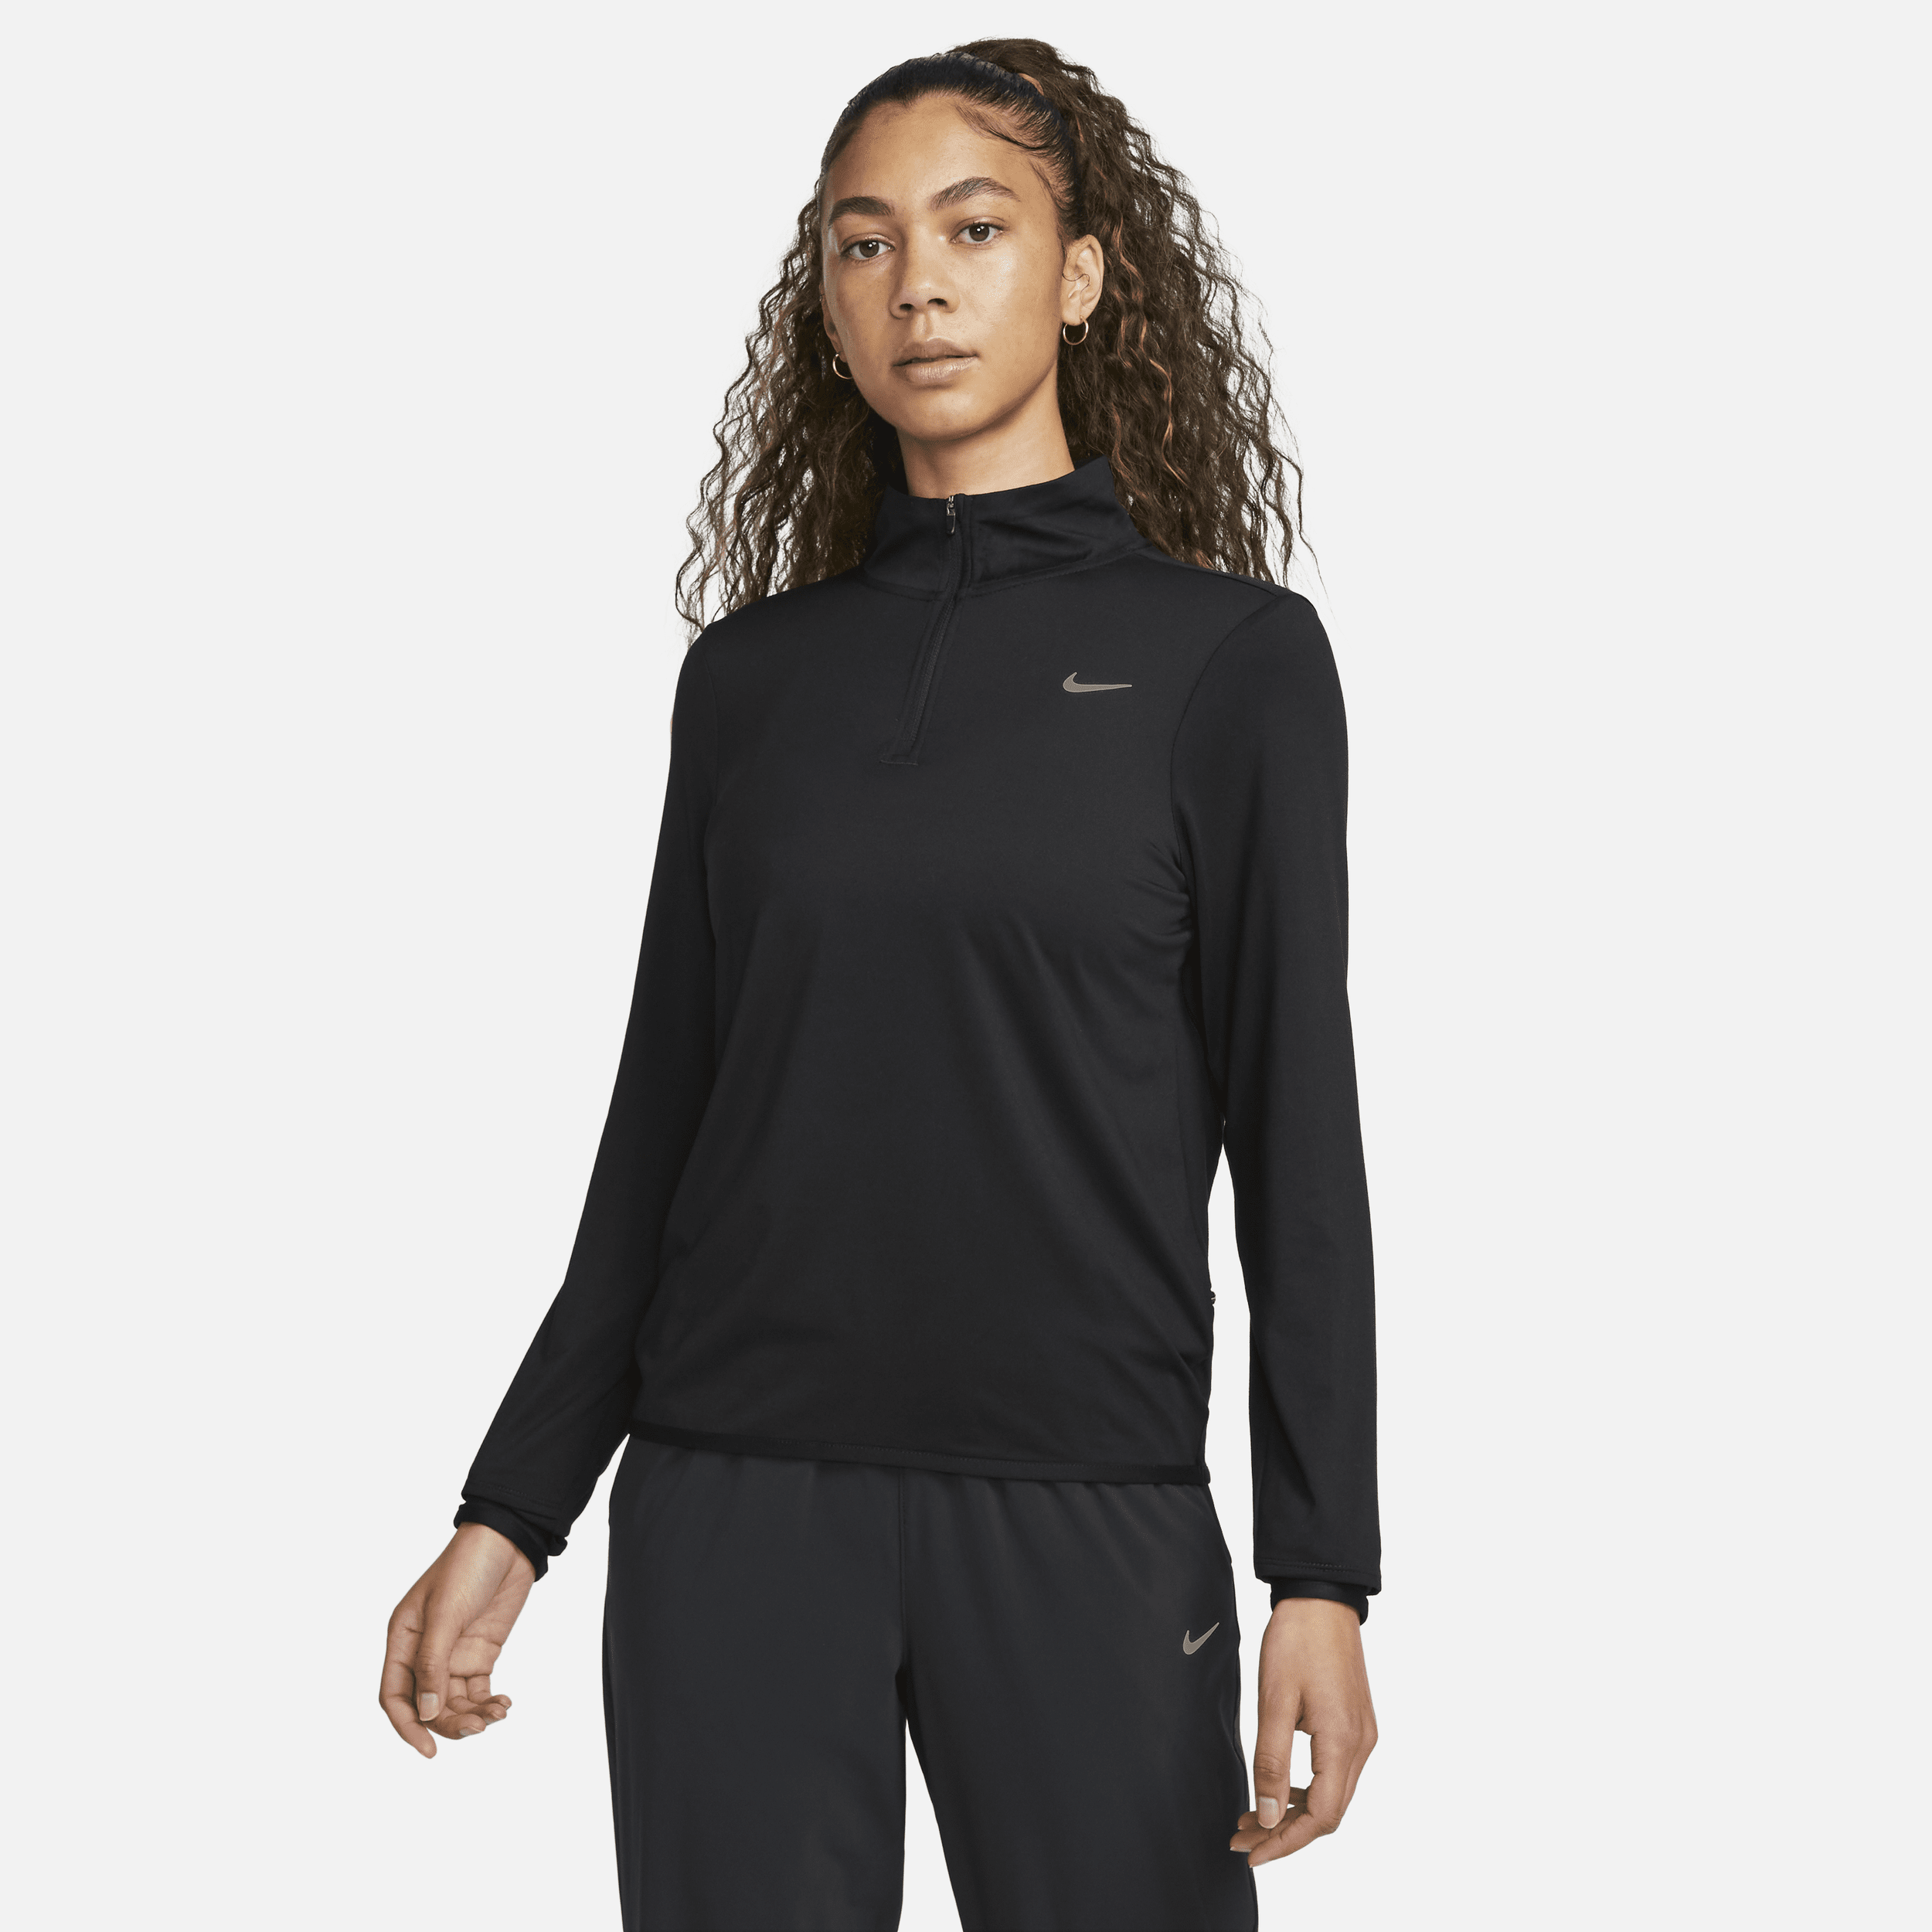 Nike Swift Parte de arriba con cremallera de 1/4 de running y protección frente a UV - Mujer - Negro